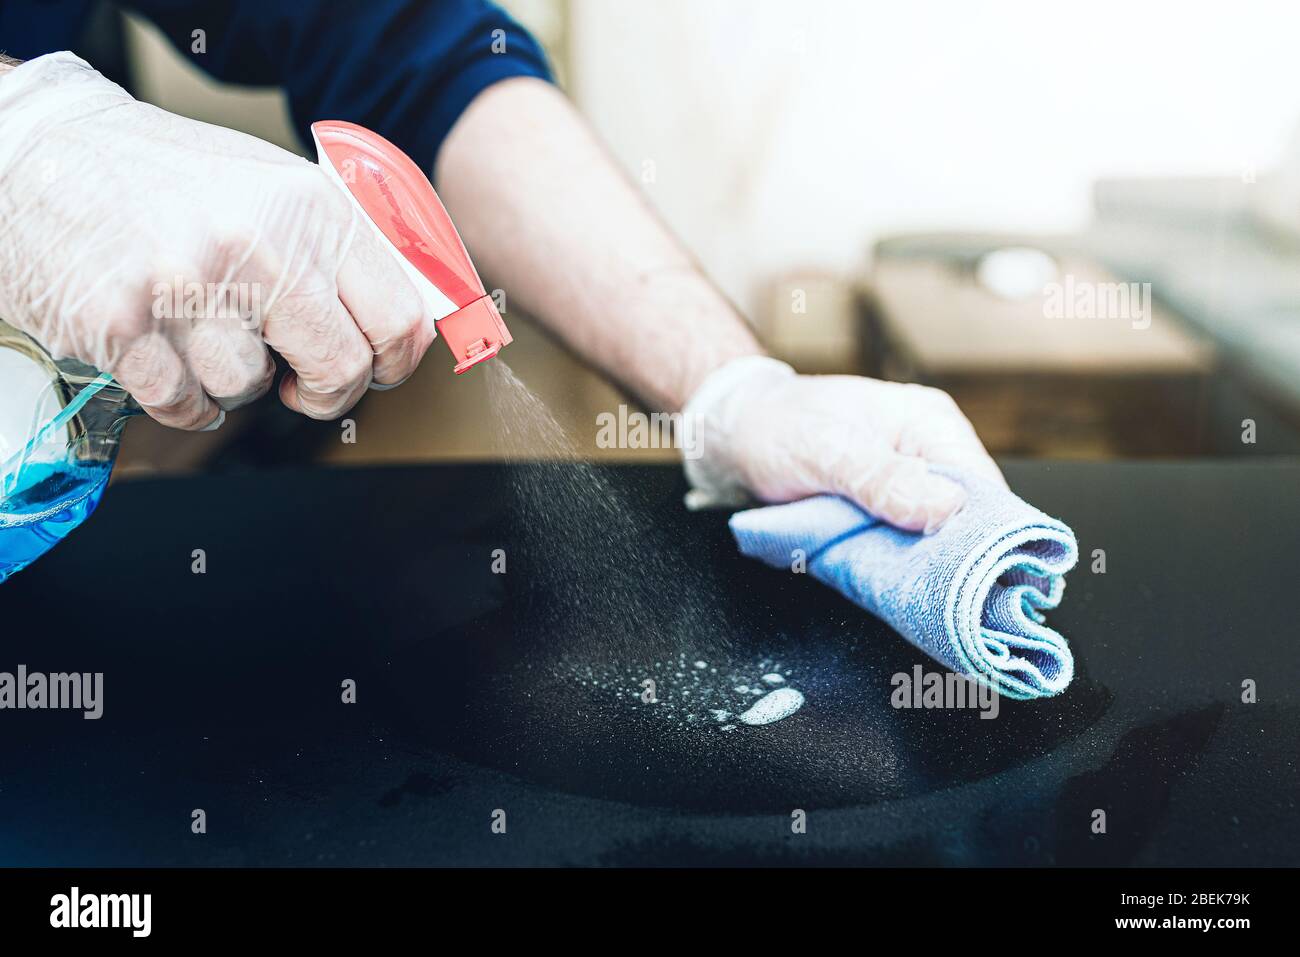 gros plan de la personne portant des gants jetables à usage unique utilisant un spray désinfectant pour nettoyer la surface de la table pendant la pandémie de covid-19 du coronavirus Banque D'Images